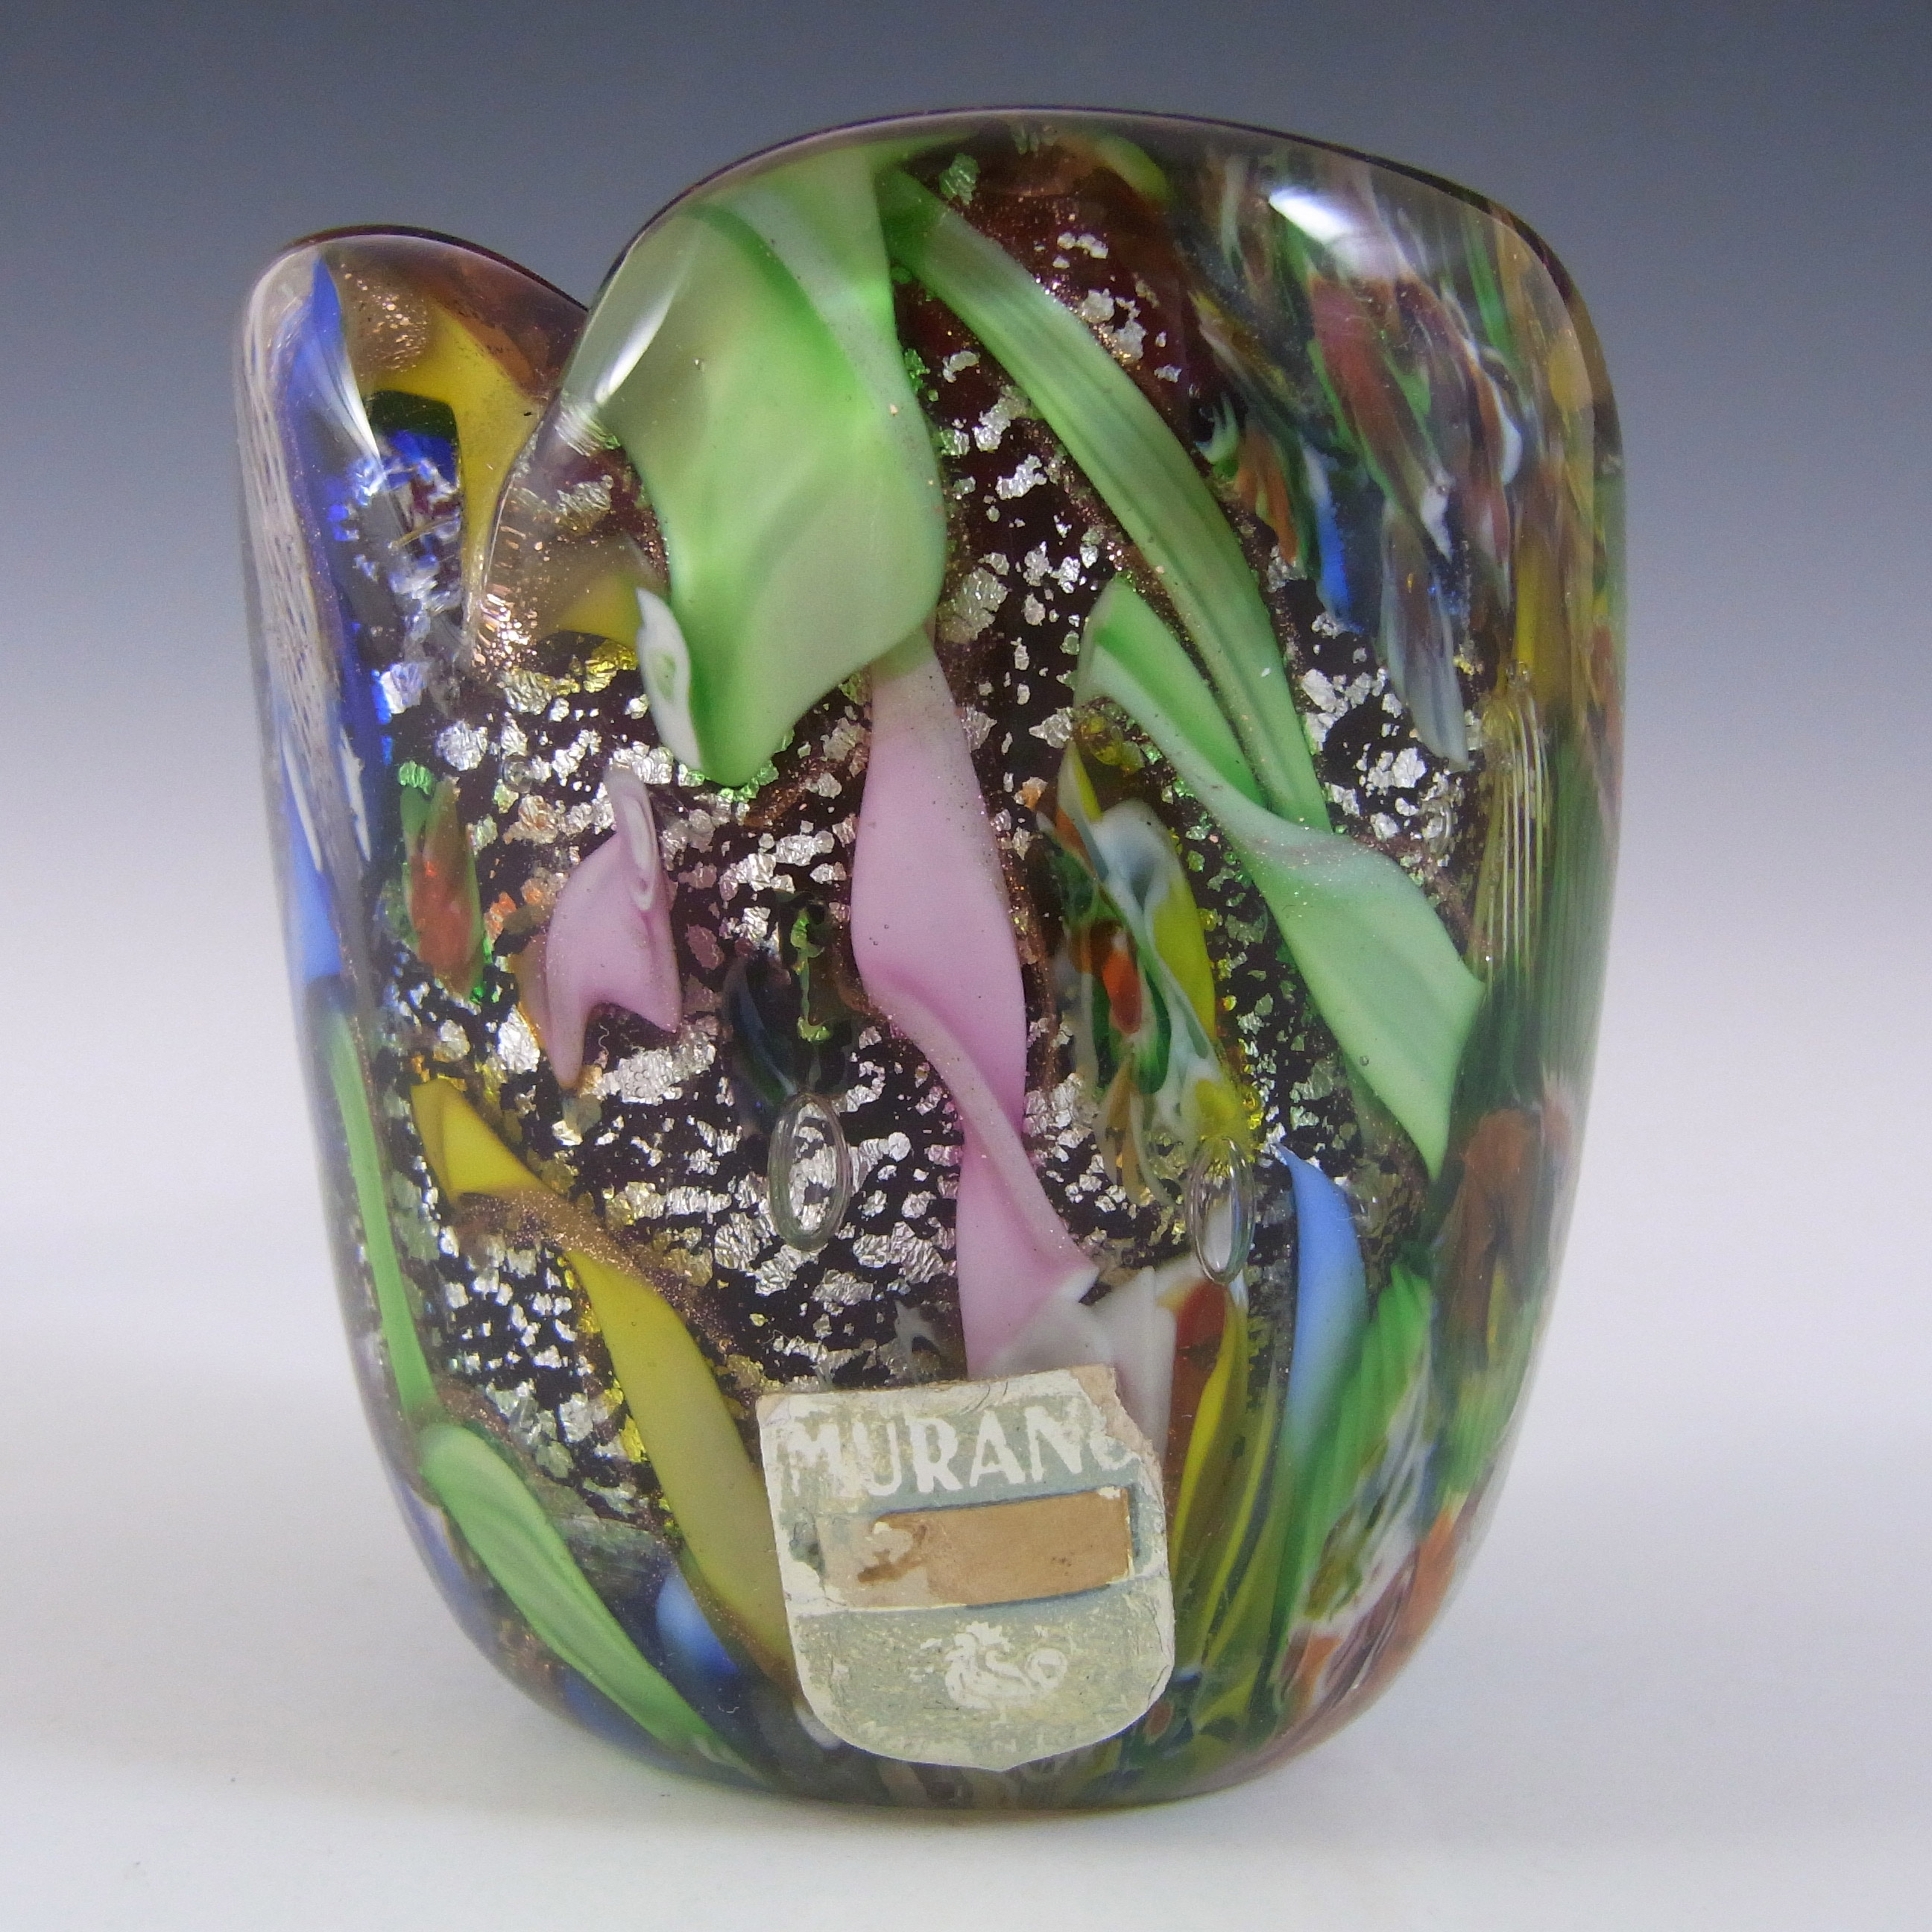 AVEM Murano Zanfirico Bizantino / Tutti Frutti Red Glass Vase w Label - Click Image to Close